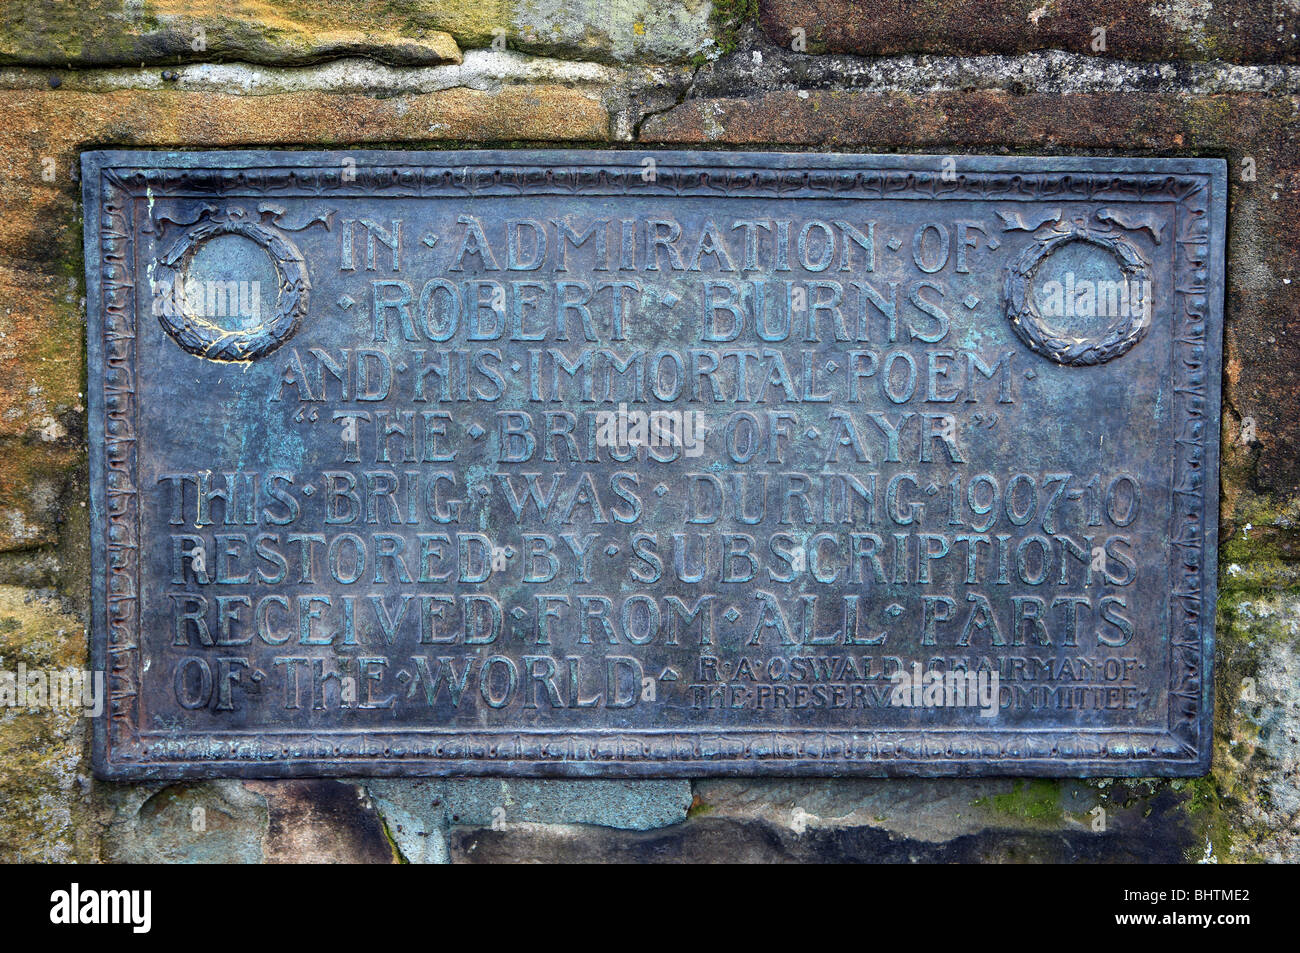 Gedenktafel in der Brücke von Ayr in Bewunderung von Robert Burns Gedicht "The Brig von Ayr" Stockfoto